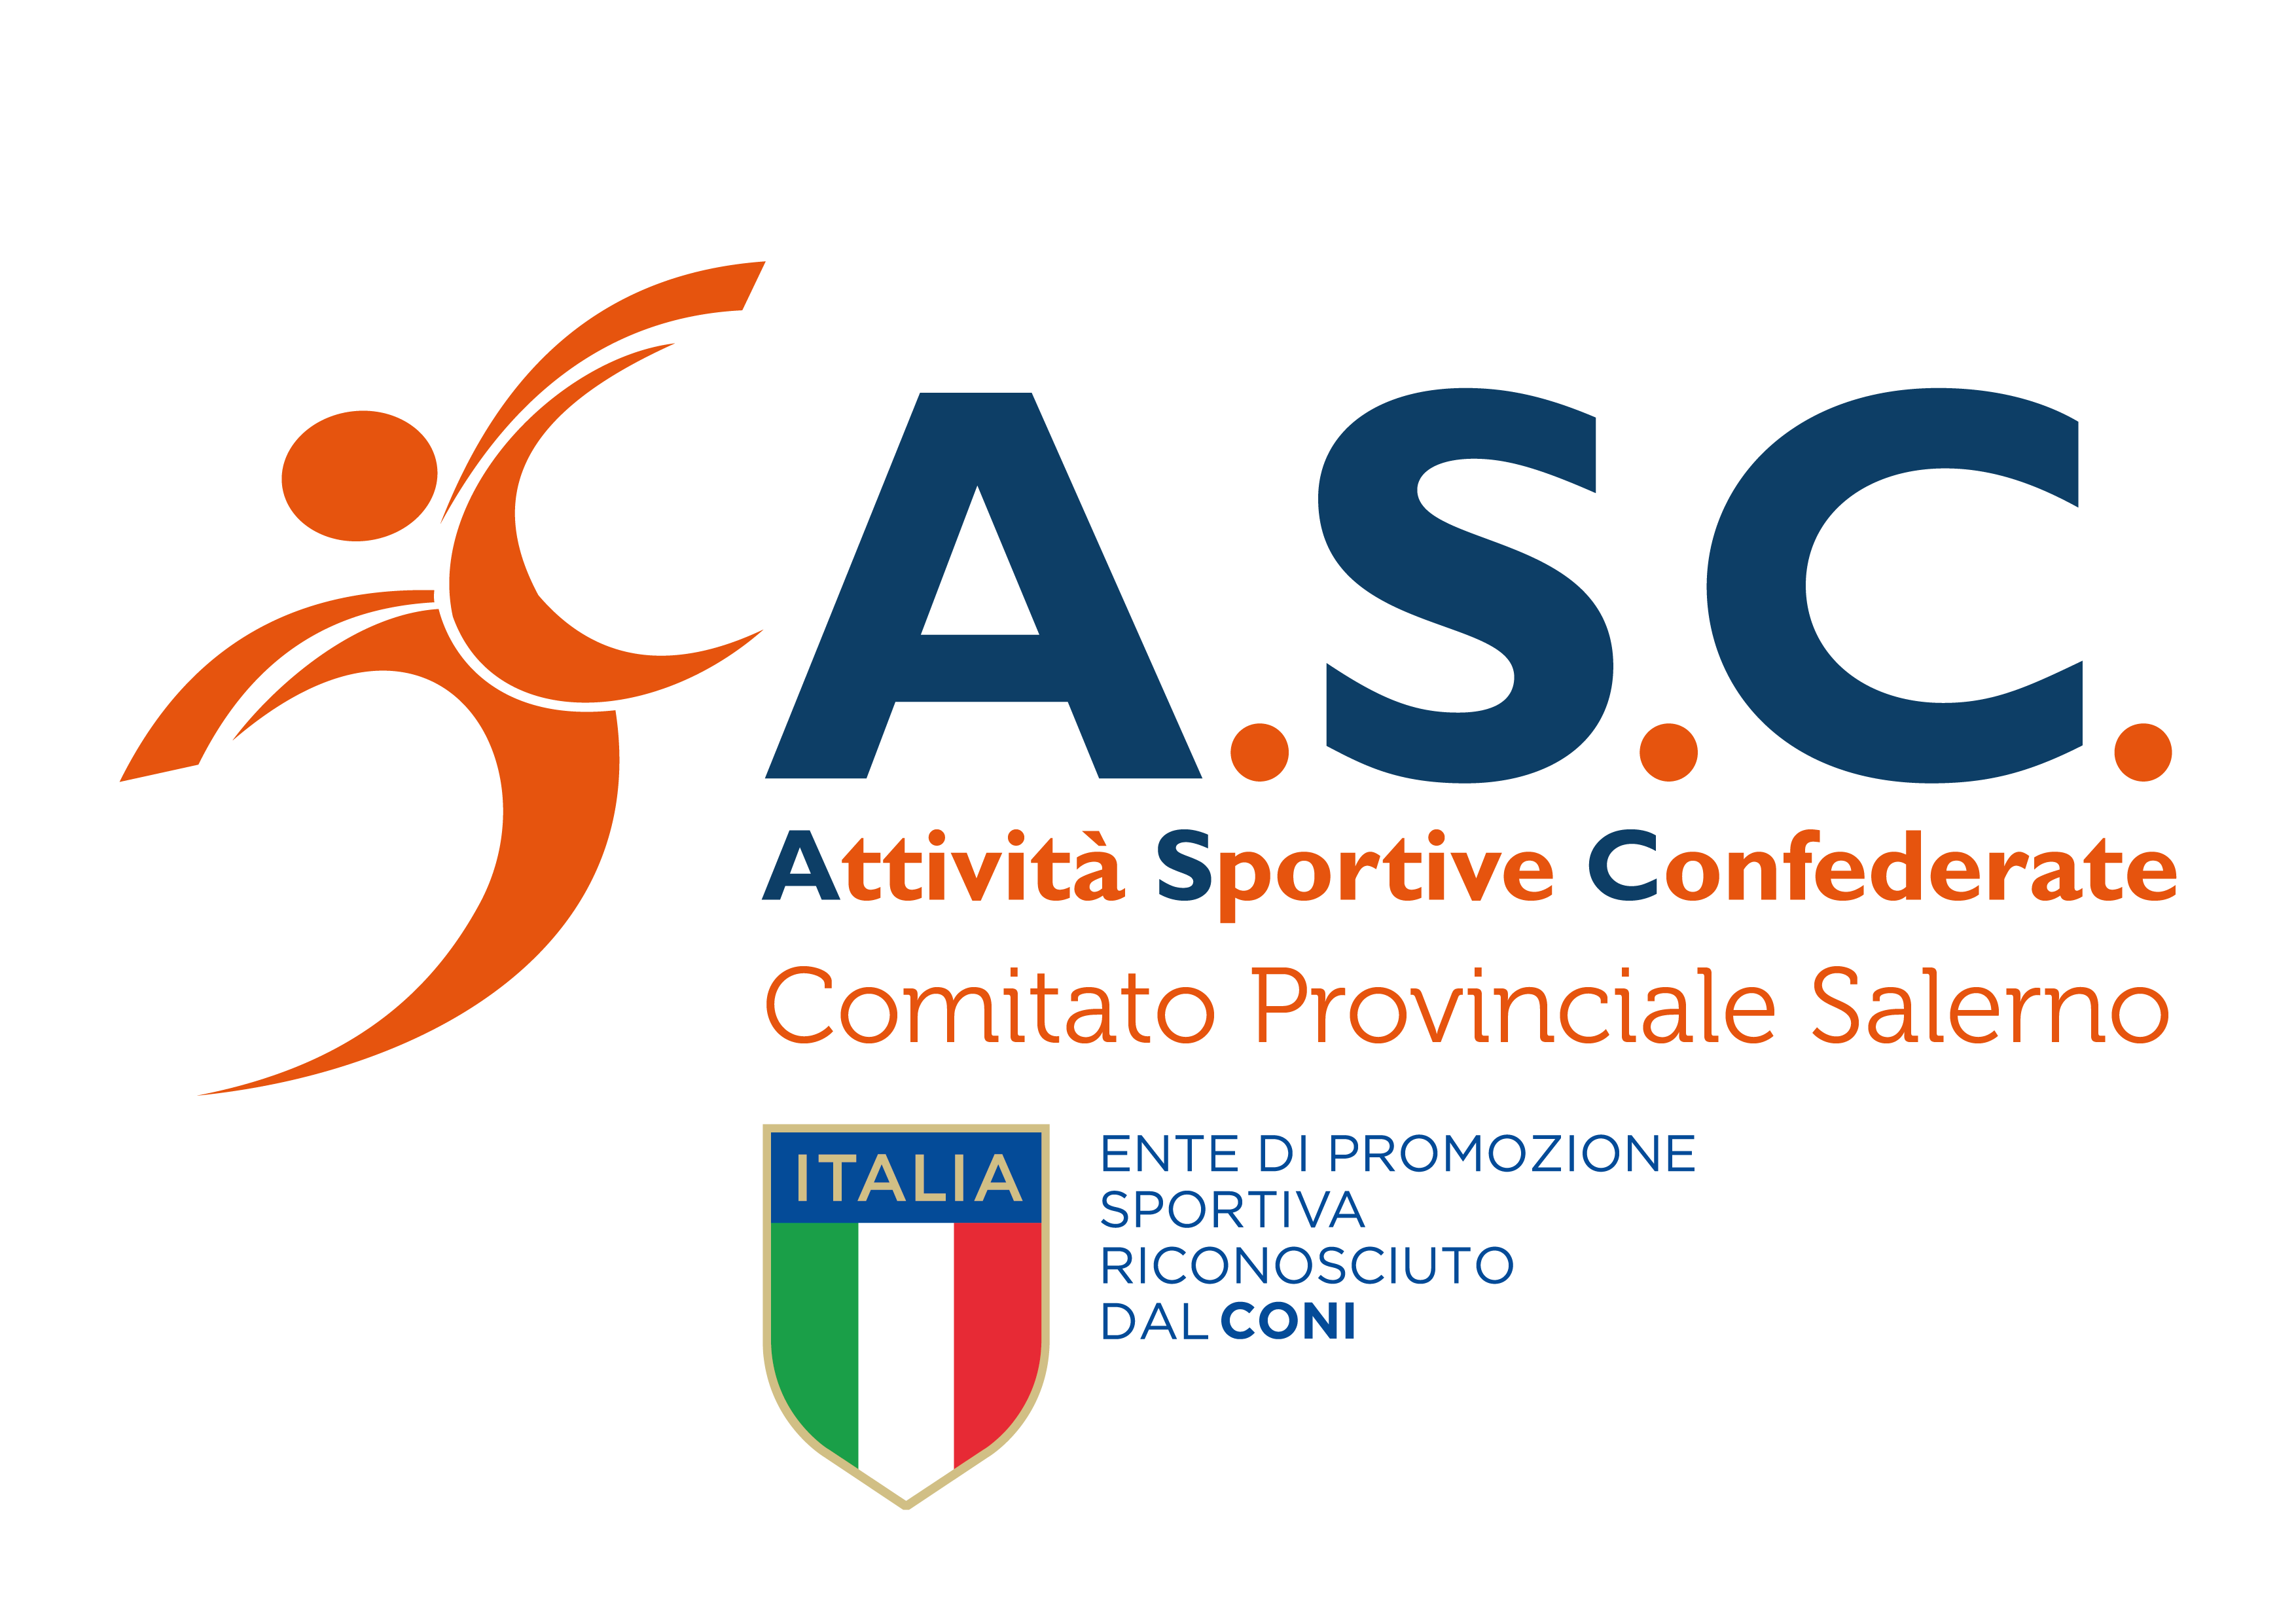 Convocazione Assemblea Provinciale Ordinaria Elettiva ASC Salerno